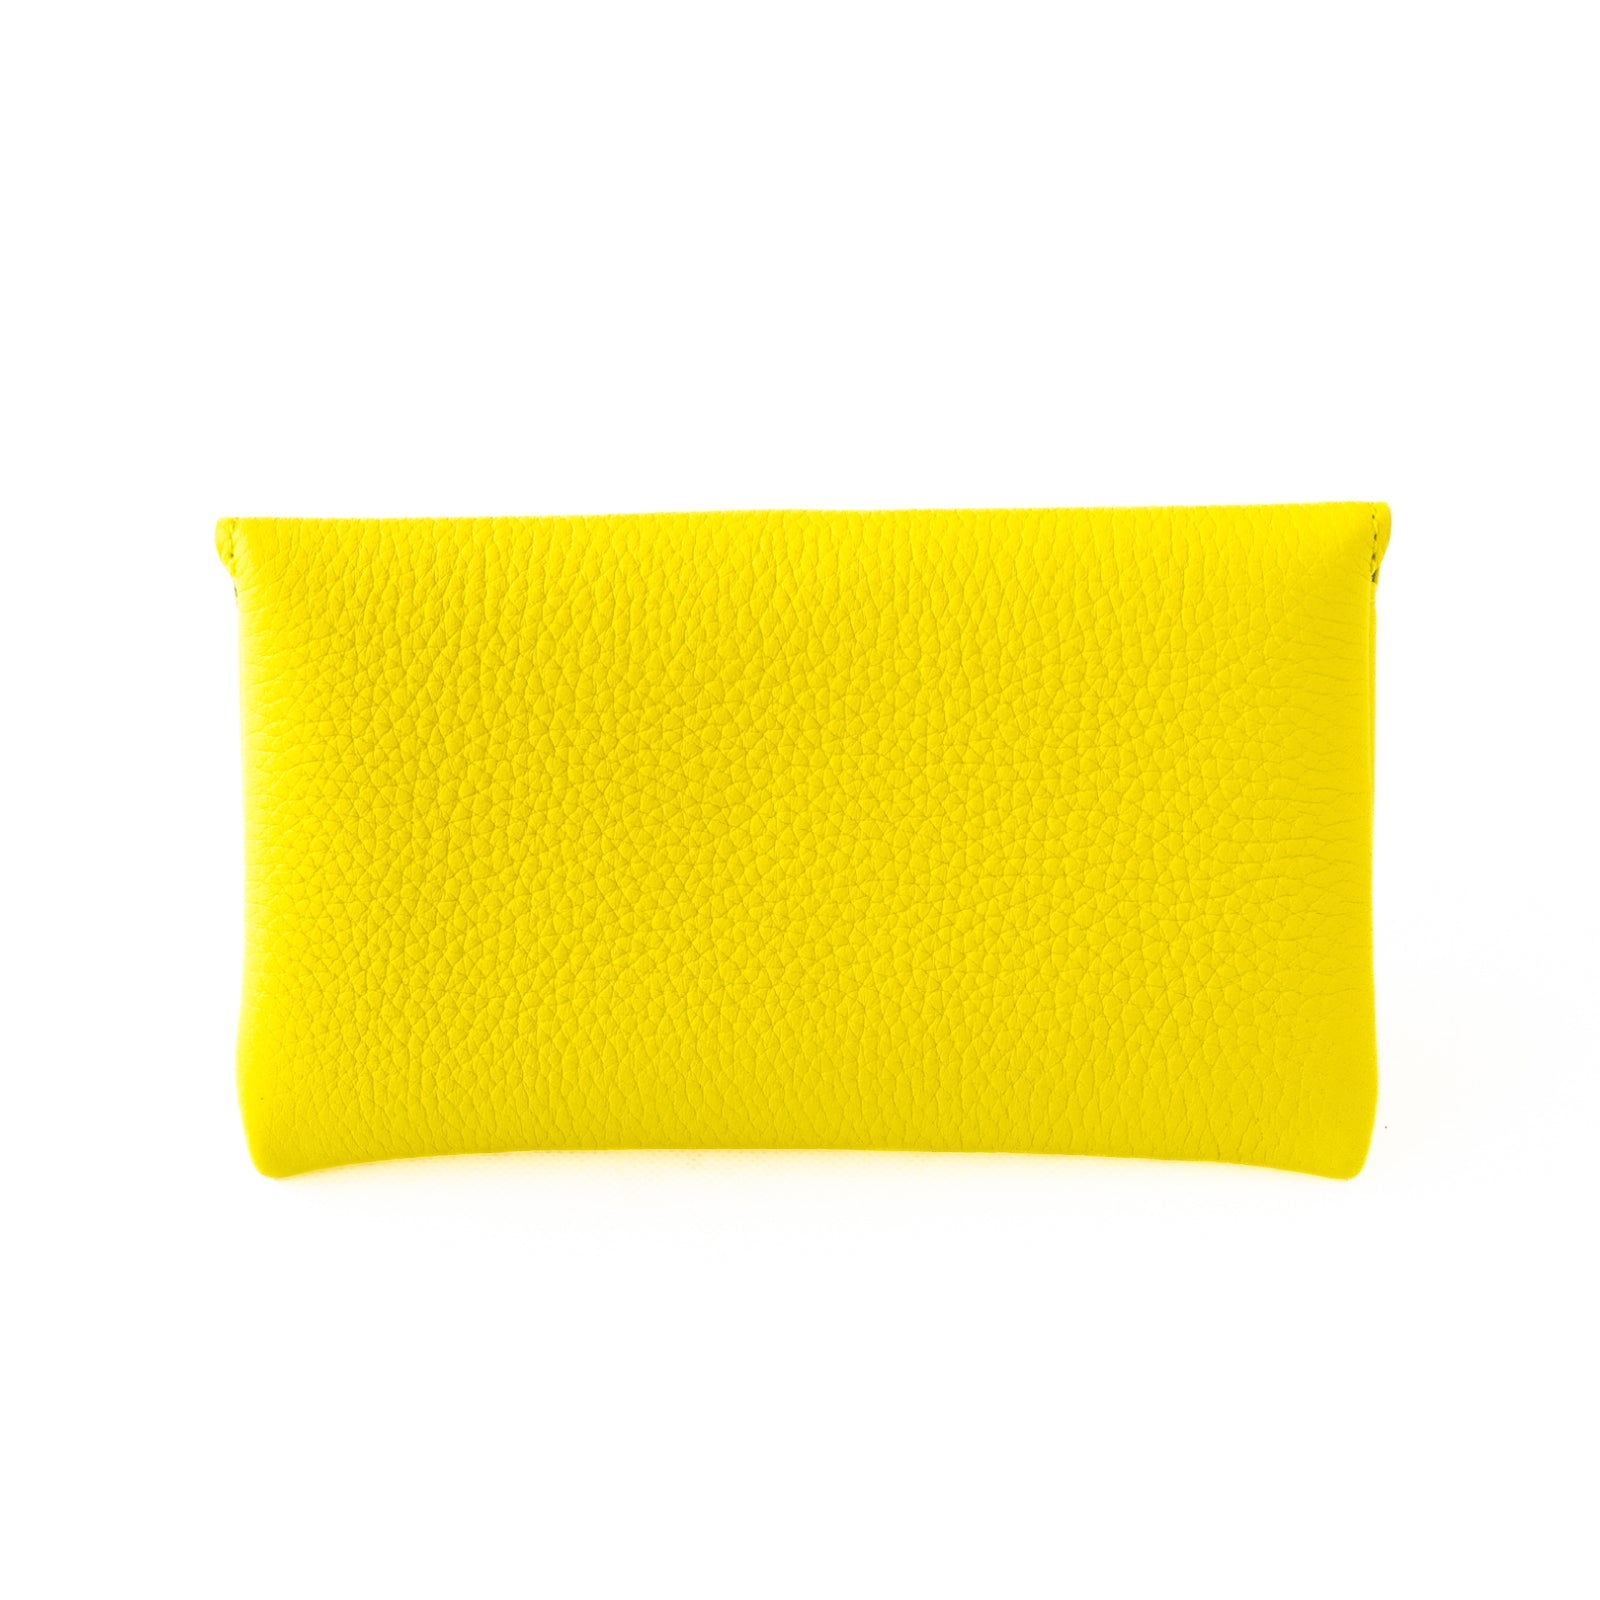 [Color order] Flap wallet Fleur long Taurillon Clemence